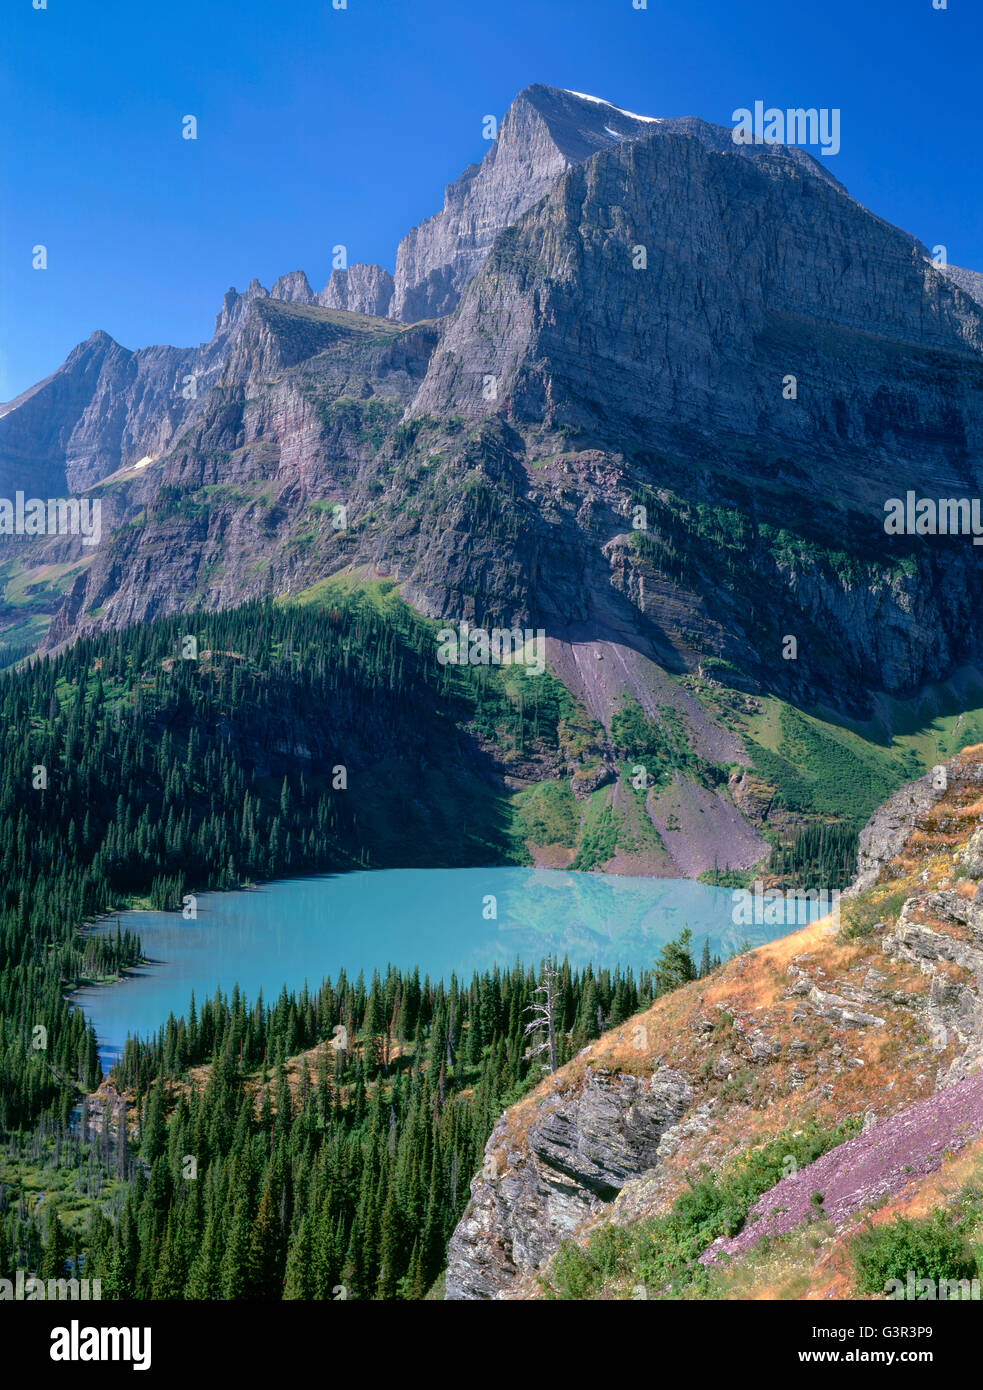 USA, Montana, Glacier National Park, Mount Gould et Angel tour d'aile au-dessus du lac Grinnell coloré turquoise envasé. Banque D'Images